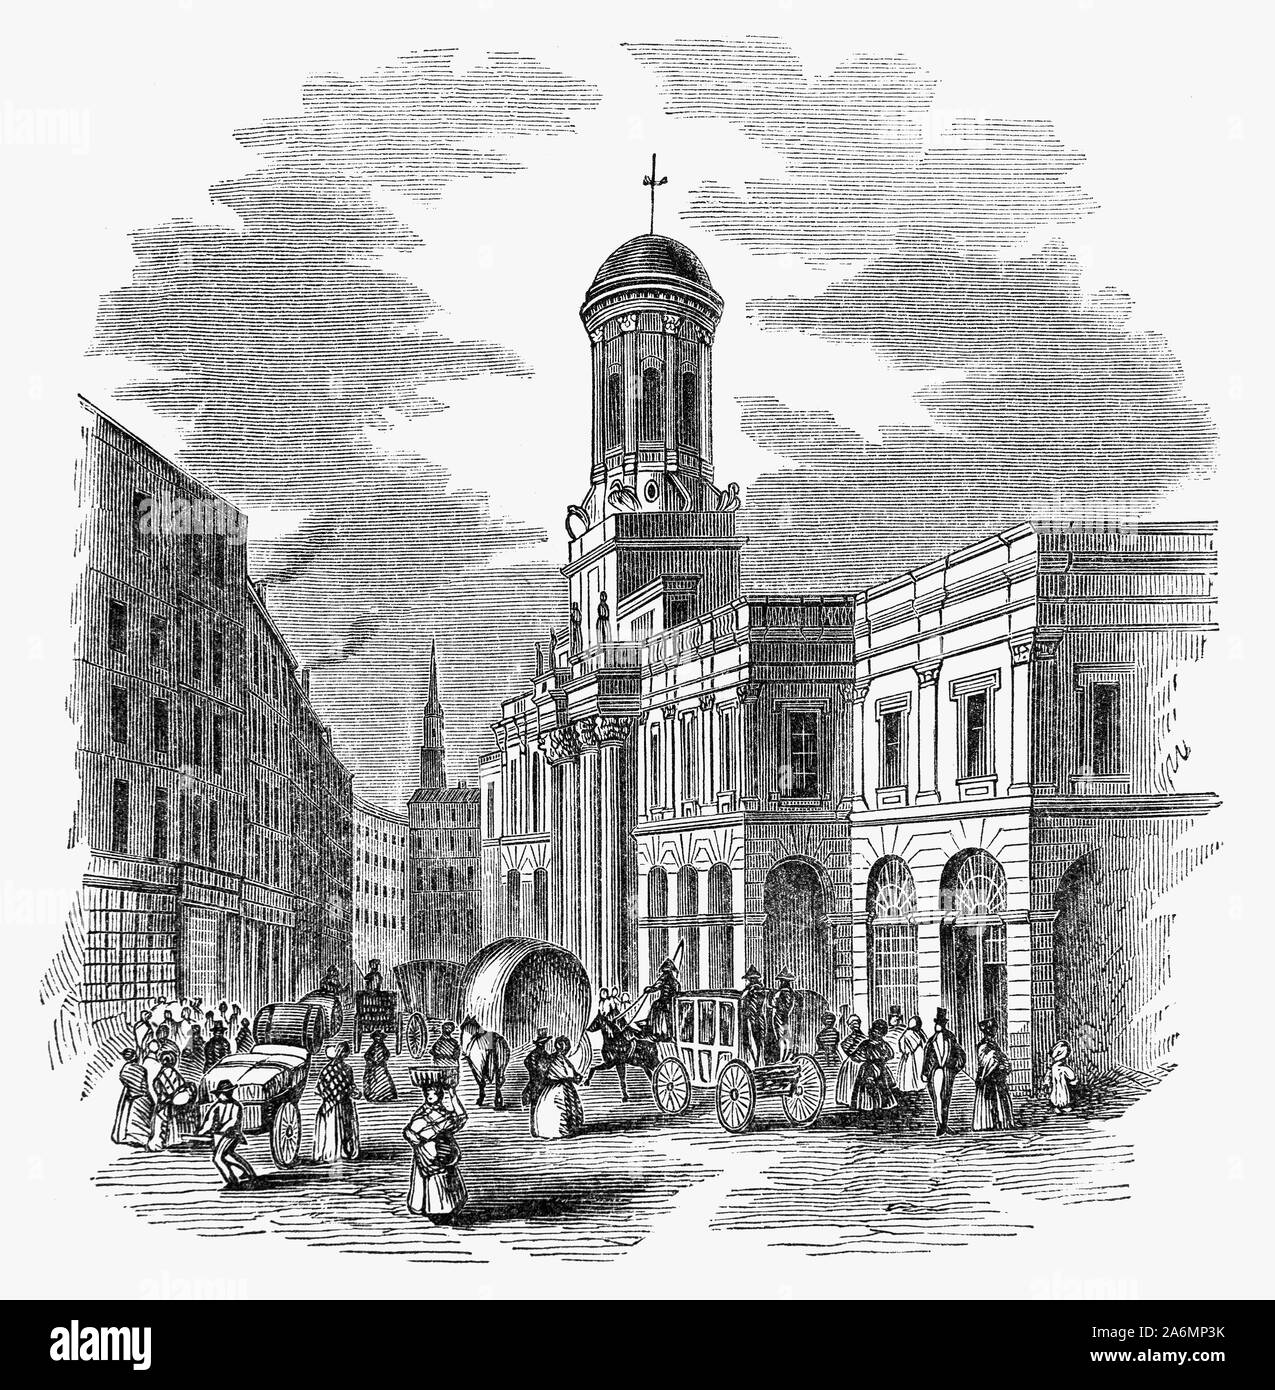 Il Royal Exchange di Londra è stata fondata nel XVI secolo dal mercante Sir Thomas Gresham su suggerimento del suo fattore Richard Clough di agire come un centro di commercio per la città di Londra. Gresham edificio originale è stato distrutto in un grande incendio di Londra nel 1666. Il secondo edificio costruito sul sito affiancato da Cornhill e Threadneedle Street è stato progettato da Edward Jarman e aperto nel 1669, ma che anche bruciate, il 10 gennaio 1838. Esso è stato utilizzato dal Lloyd's mercato assicurativo, che è stato costretto a spostare temporaneamente al Mare del Sud Assemblea dopo l'incendio del 1838. Foto Stock